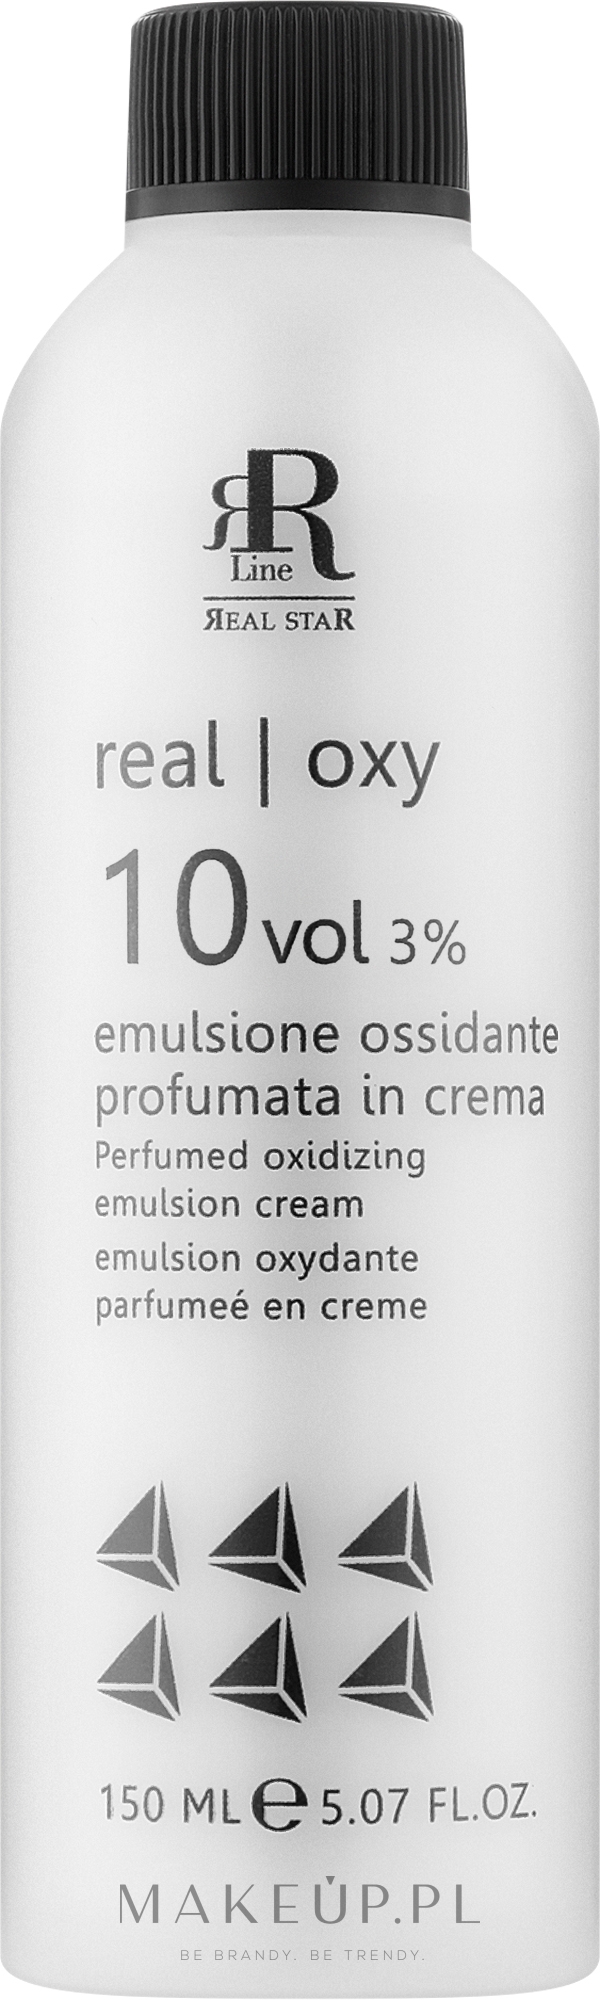 Perfumowana emulsja utleniająca 3% - RR Line Parfymed Oxidizing Emulsion Cream — Zdjęcie 150 ml